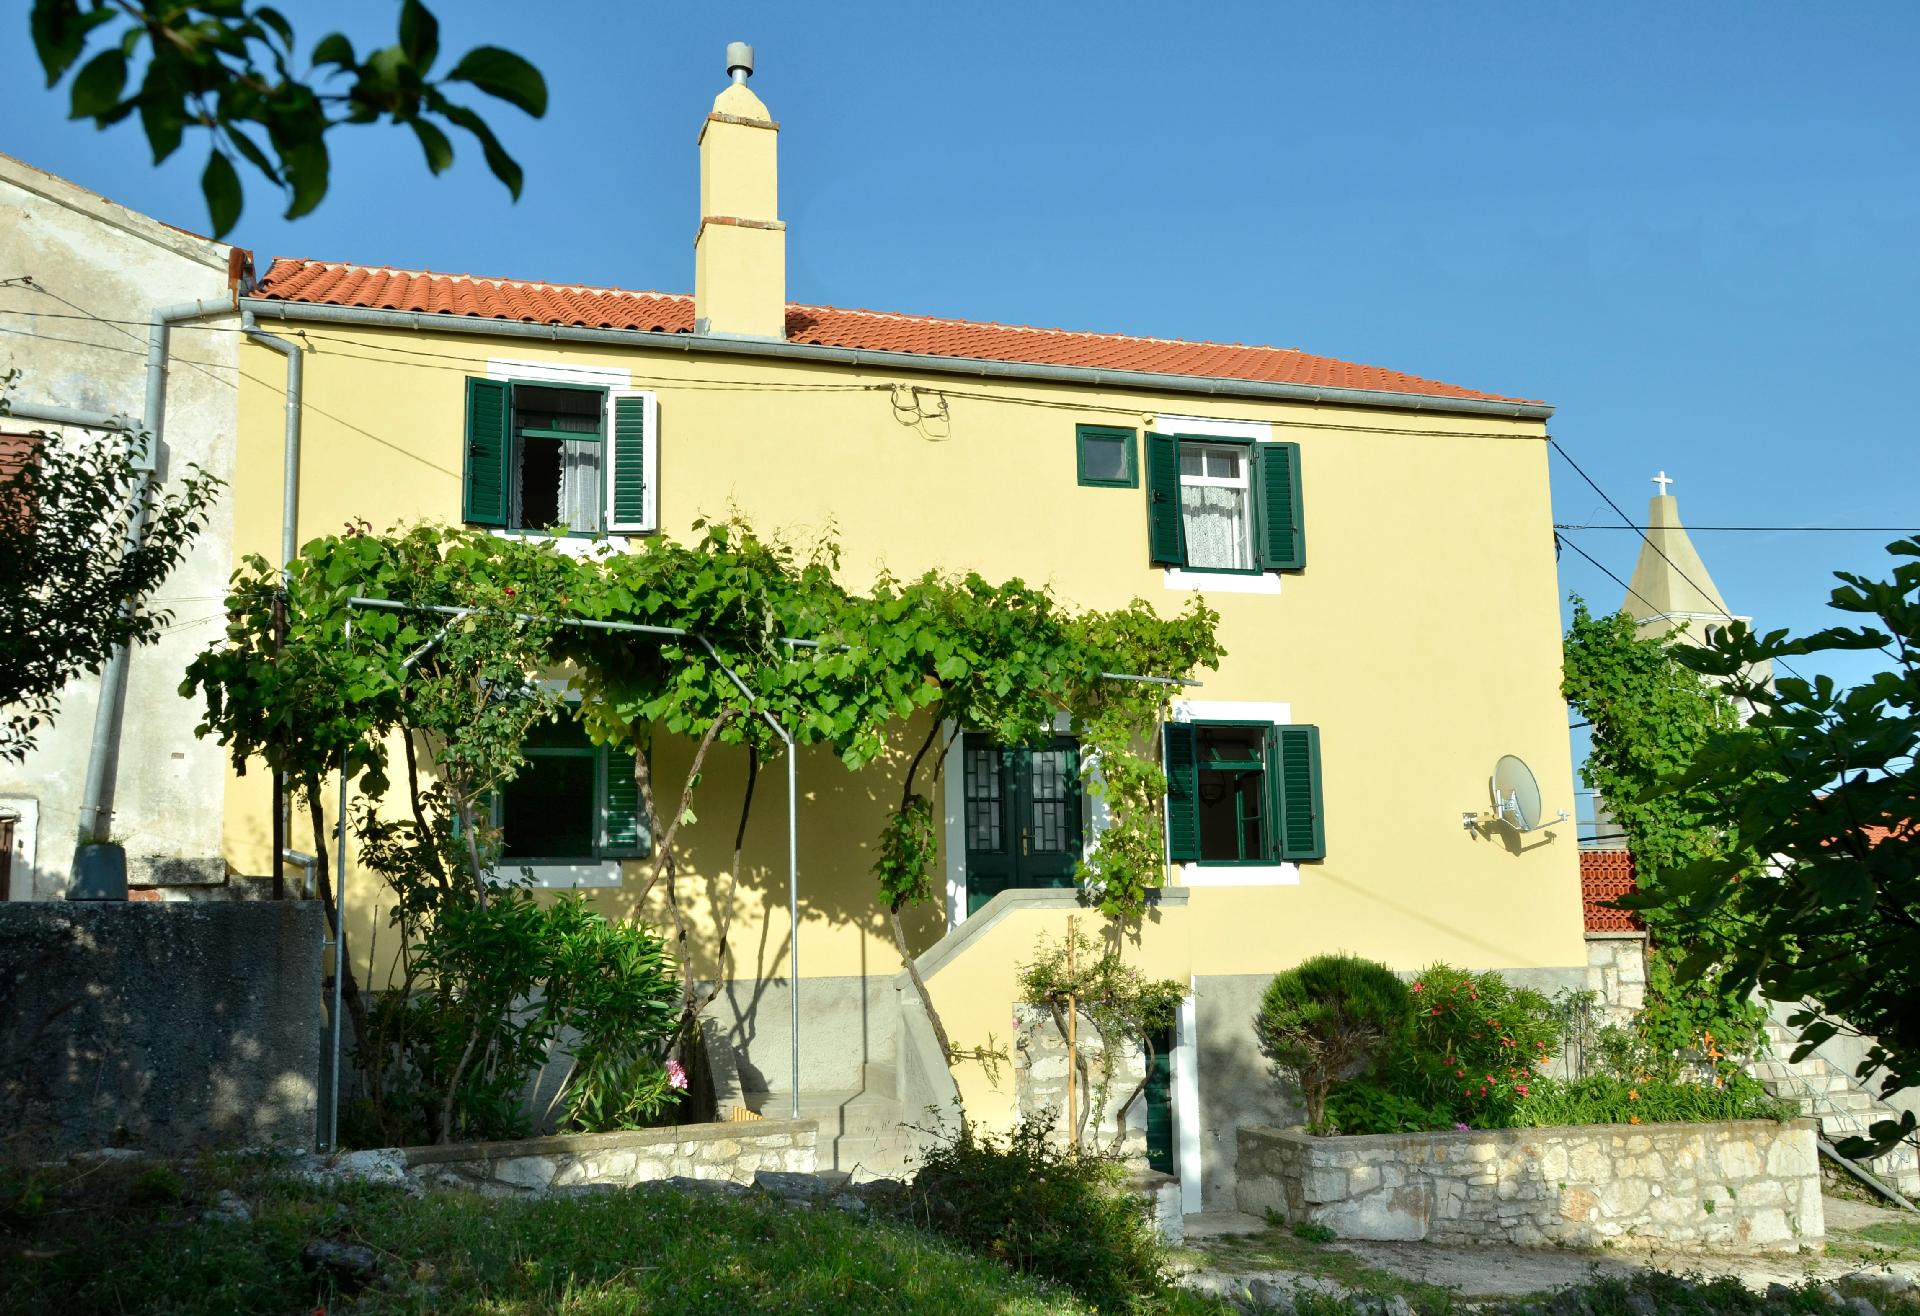 Ferienhaus für 4 Personen ca. 80 m² in S  in Kroatien